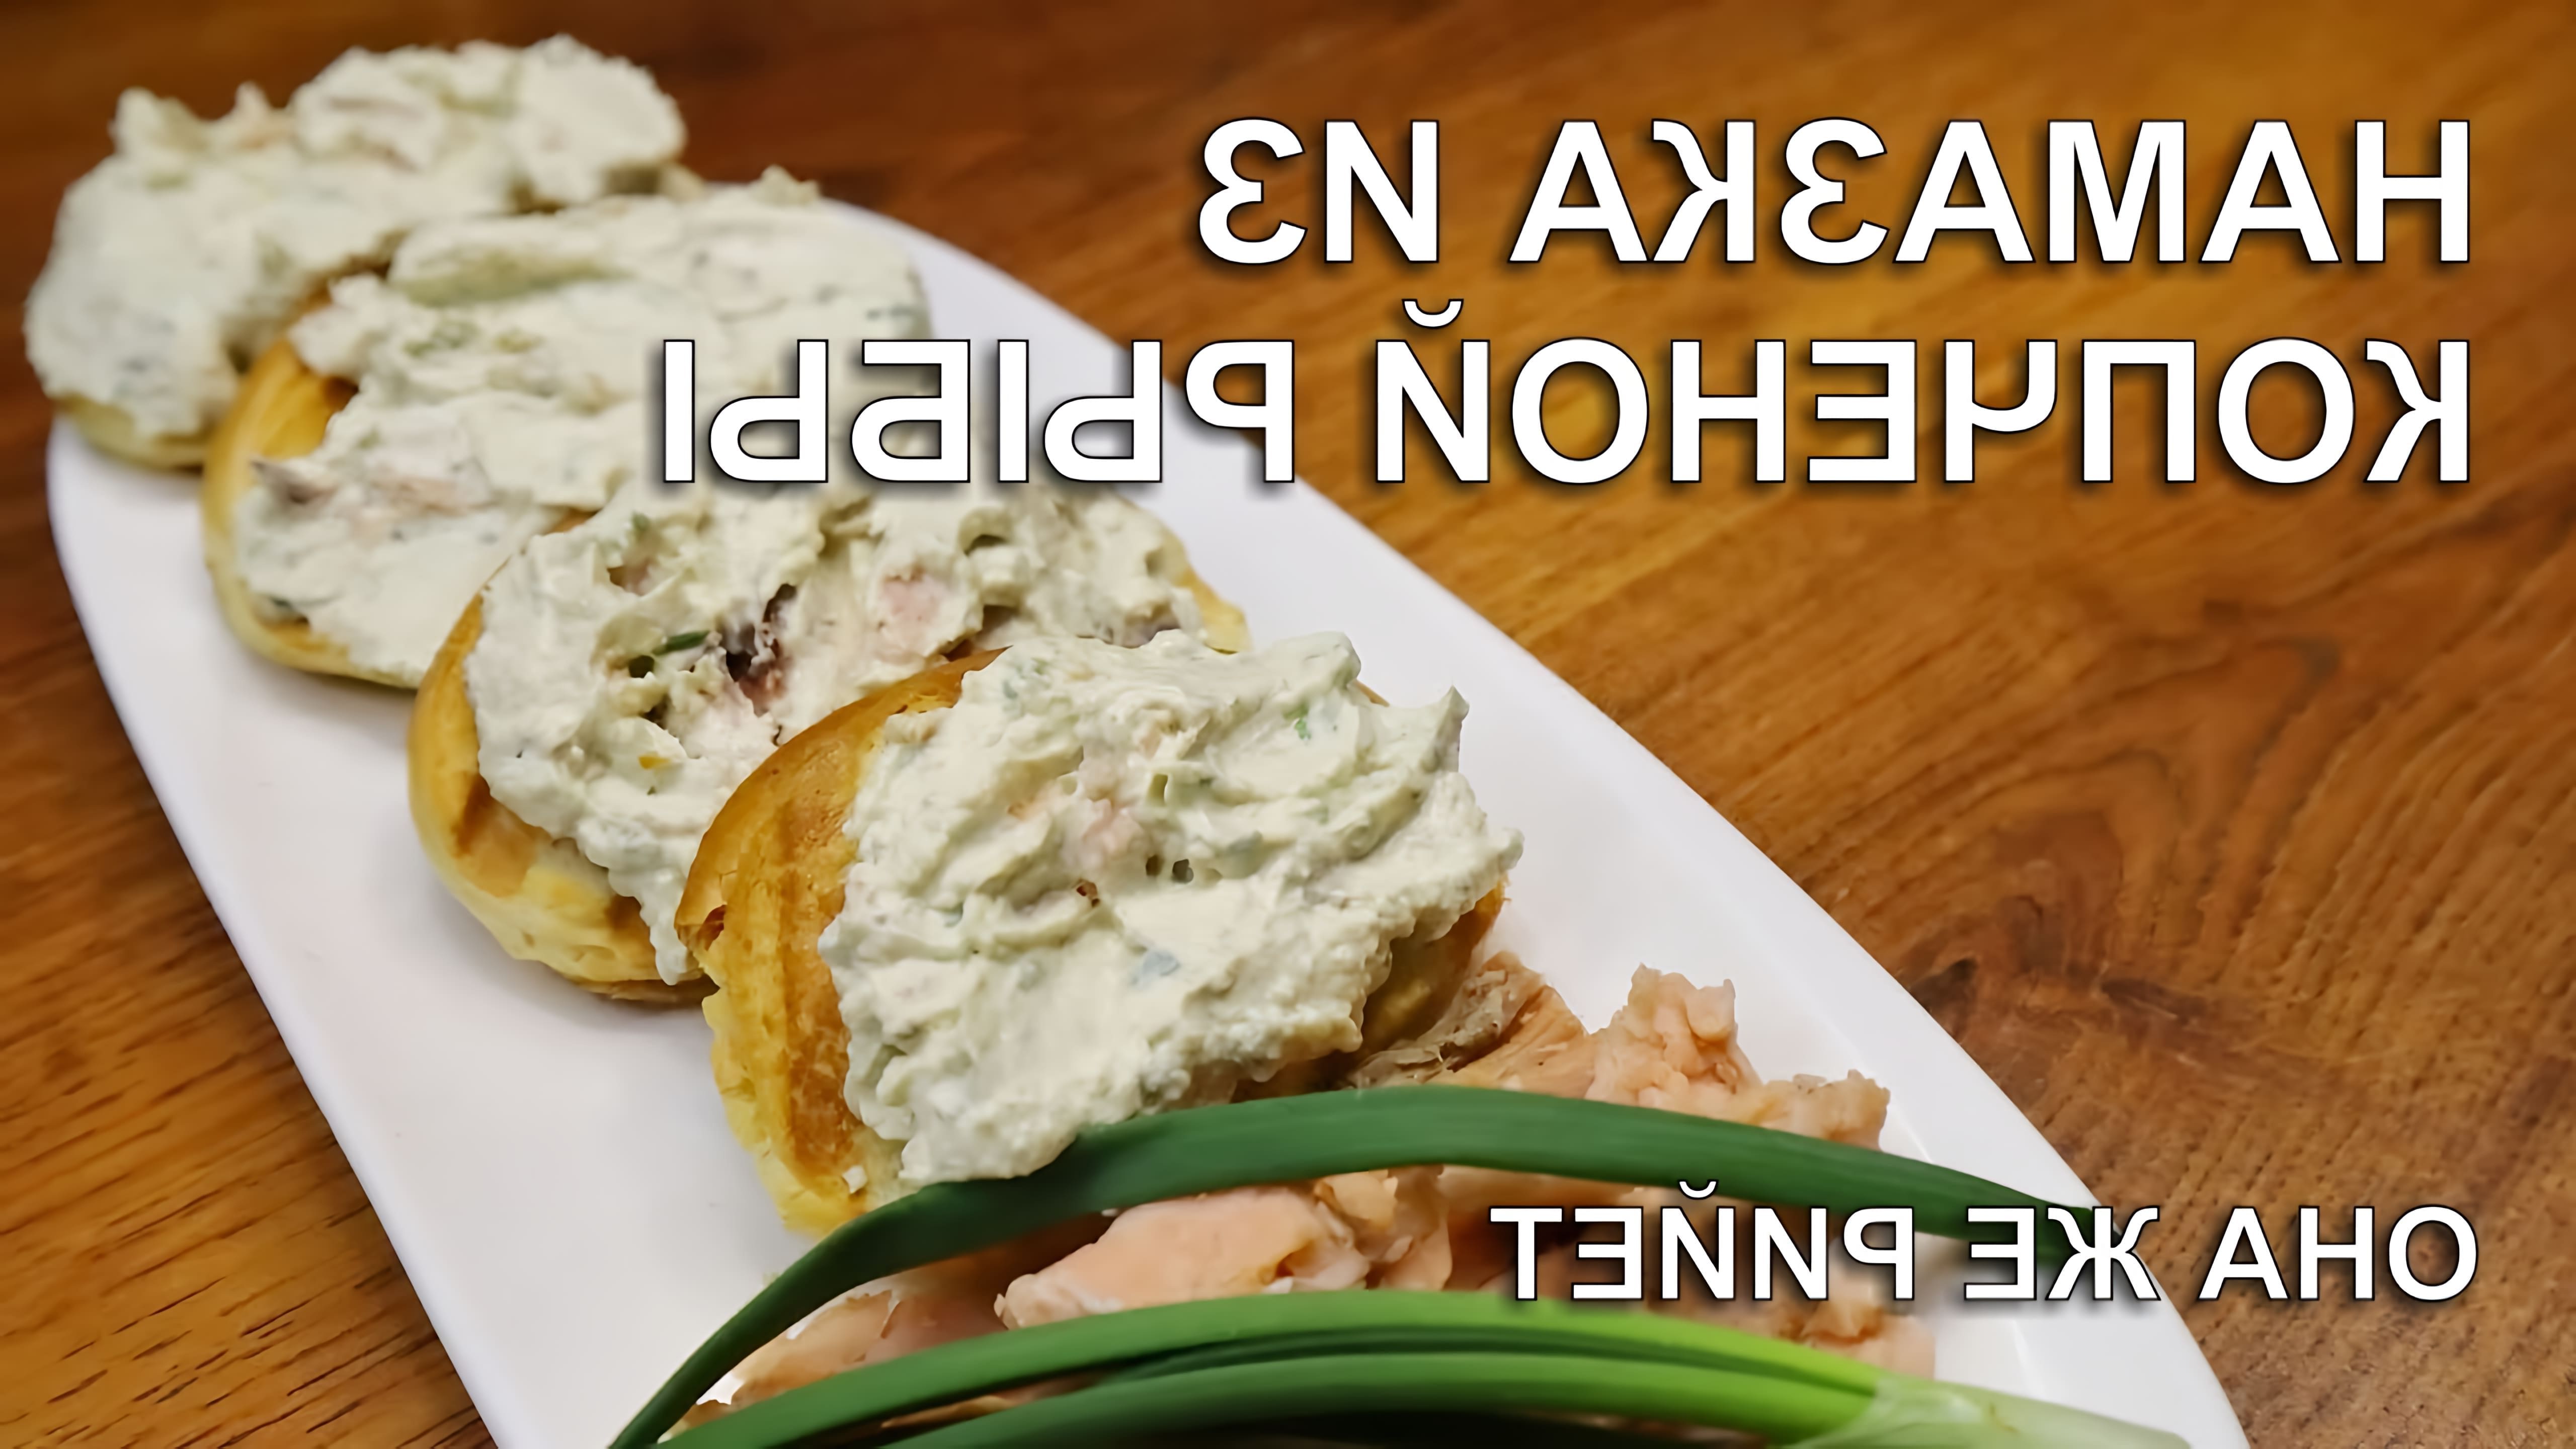 В этом видео демонстрируется рецепт приготовления намазки из копченой рыбы, которую автор называет рийет по-французски